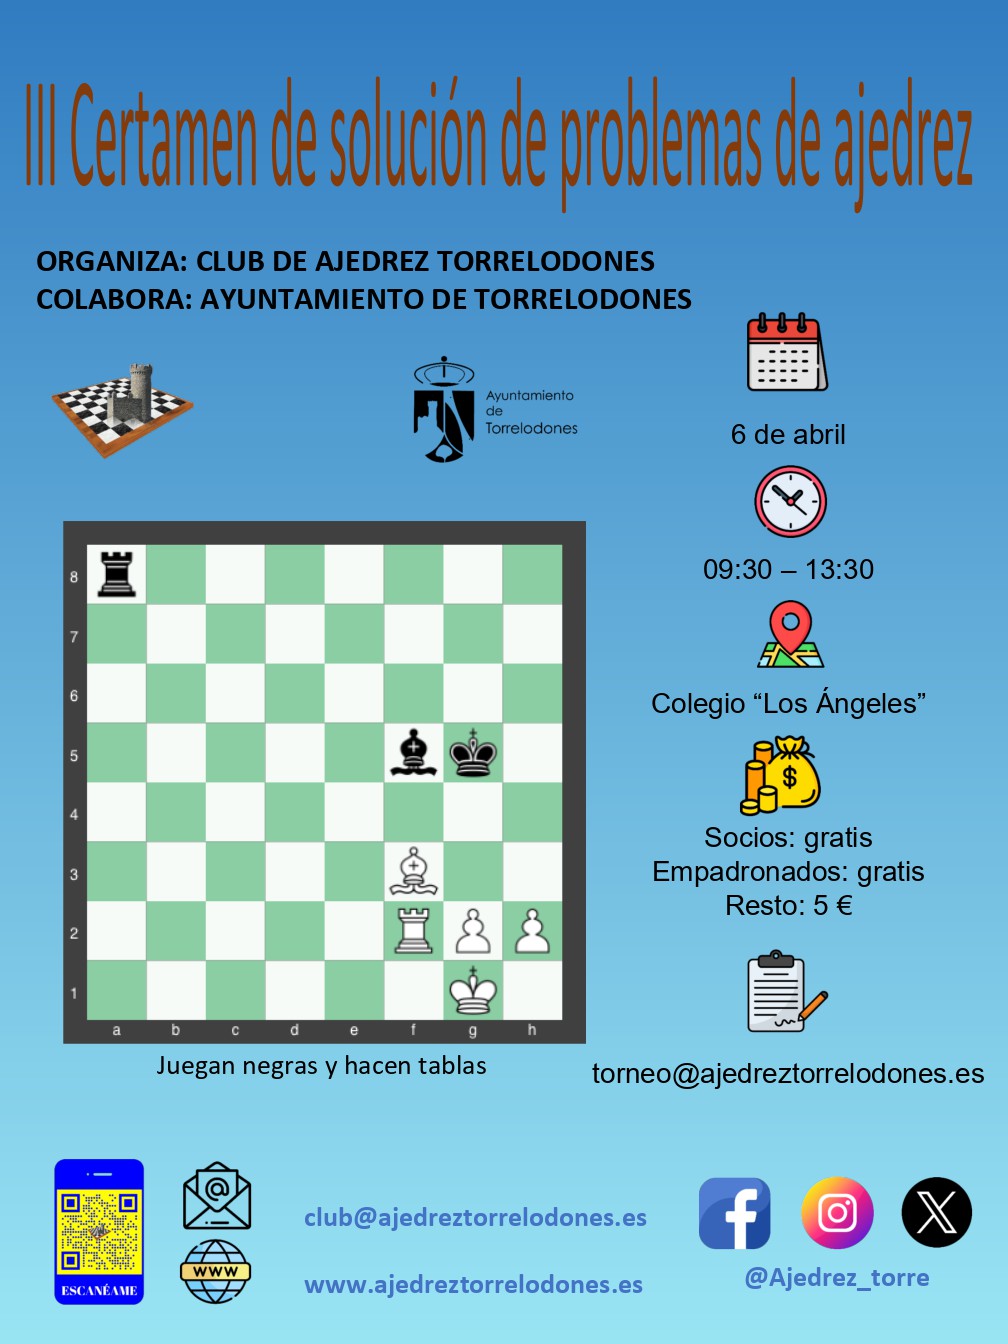 III Certamen de solución de problemas de ajedrez